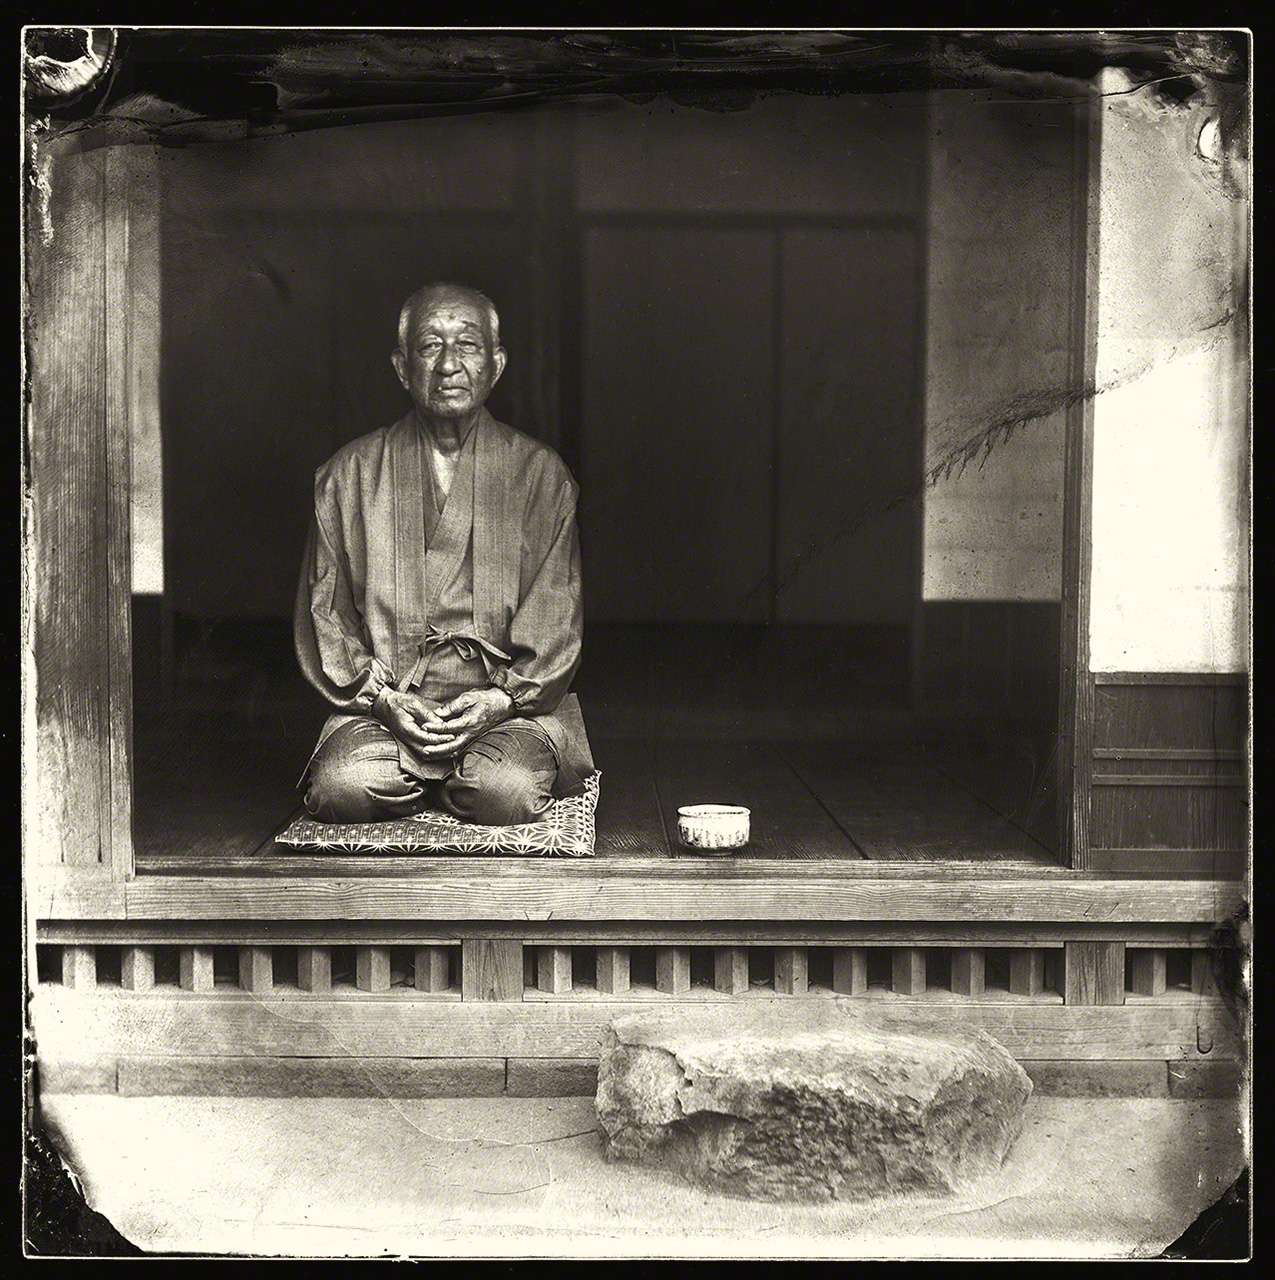 L’historien et conteur local Fujioka Daisetsu. Ses récits sur la région d’Izumo ont été une inspiration majeure pour ce projet photographique.